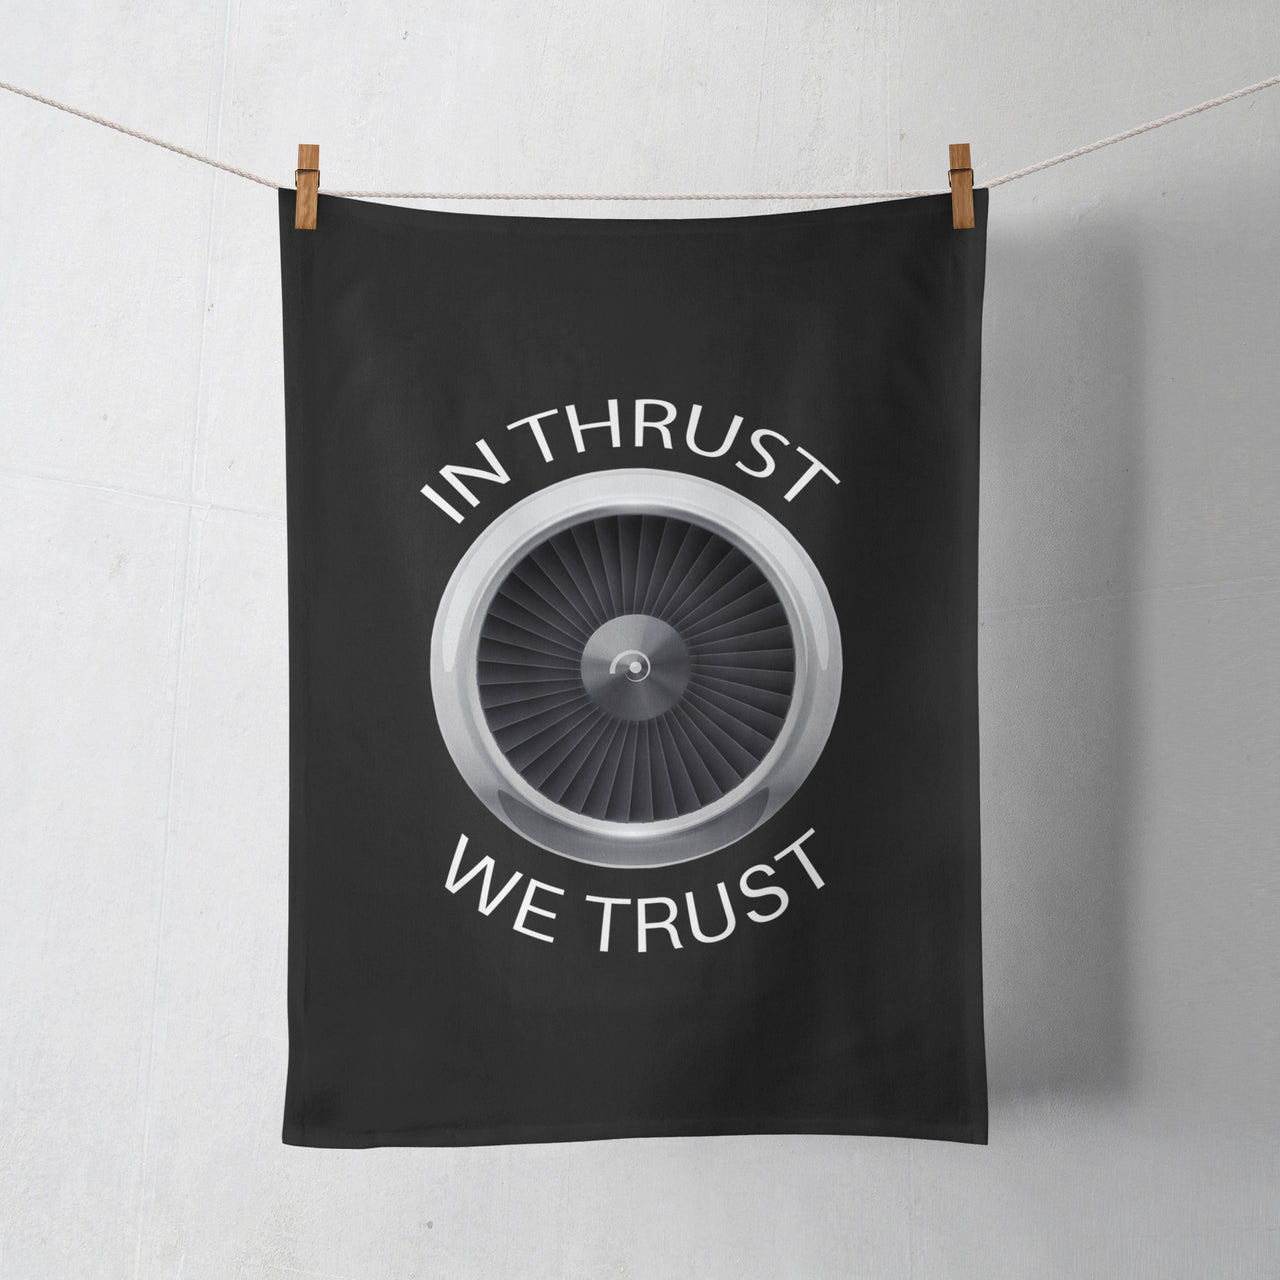 In Thrust We Trust Designed Towels